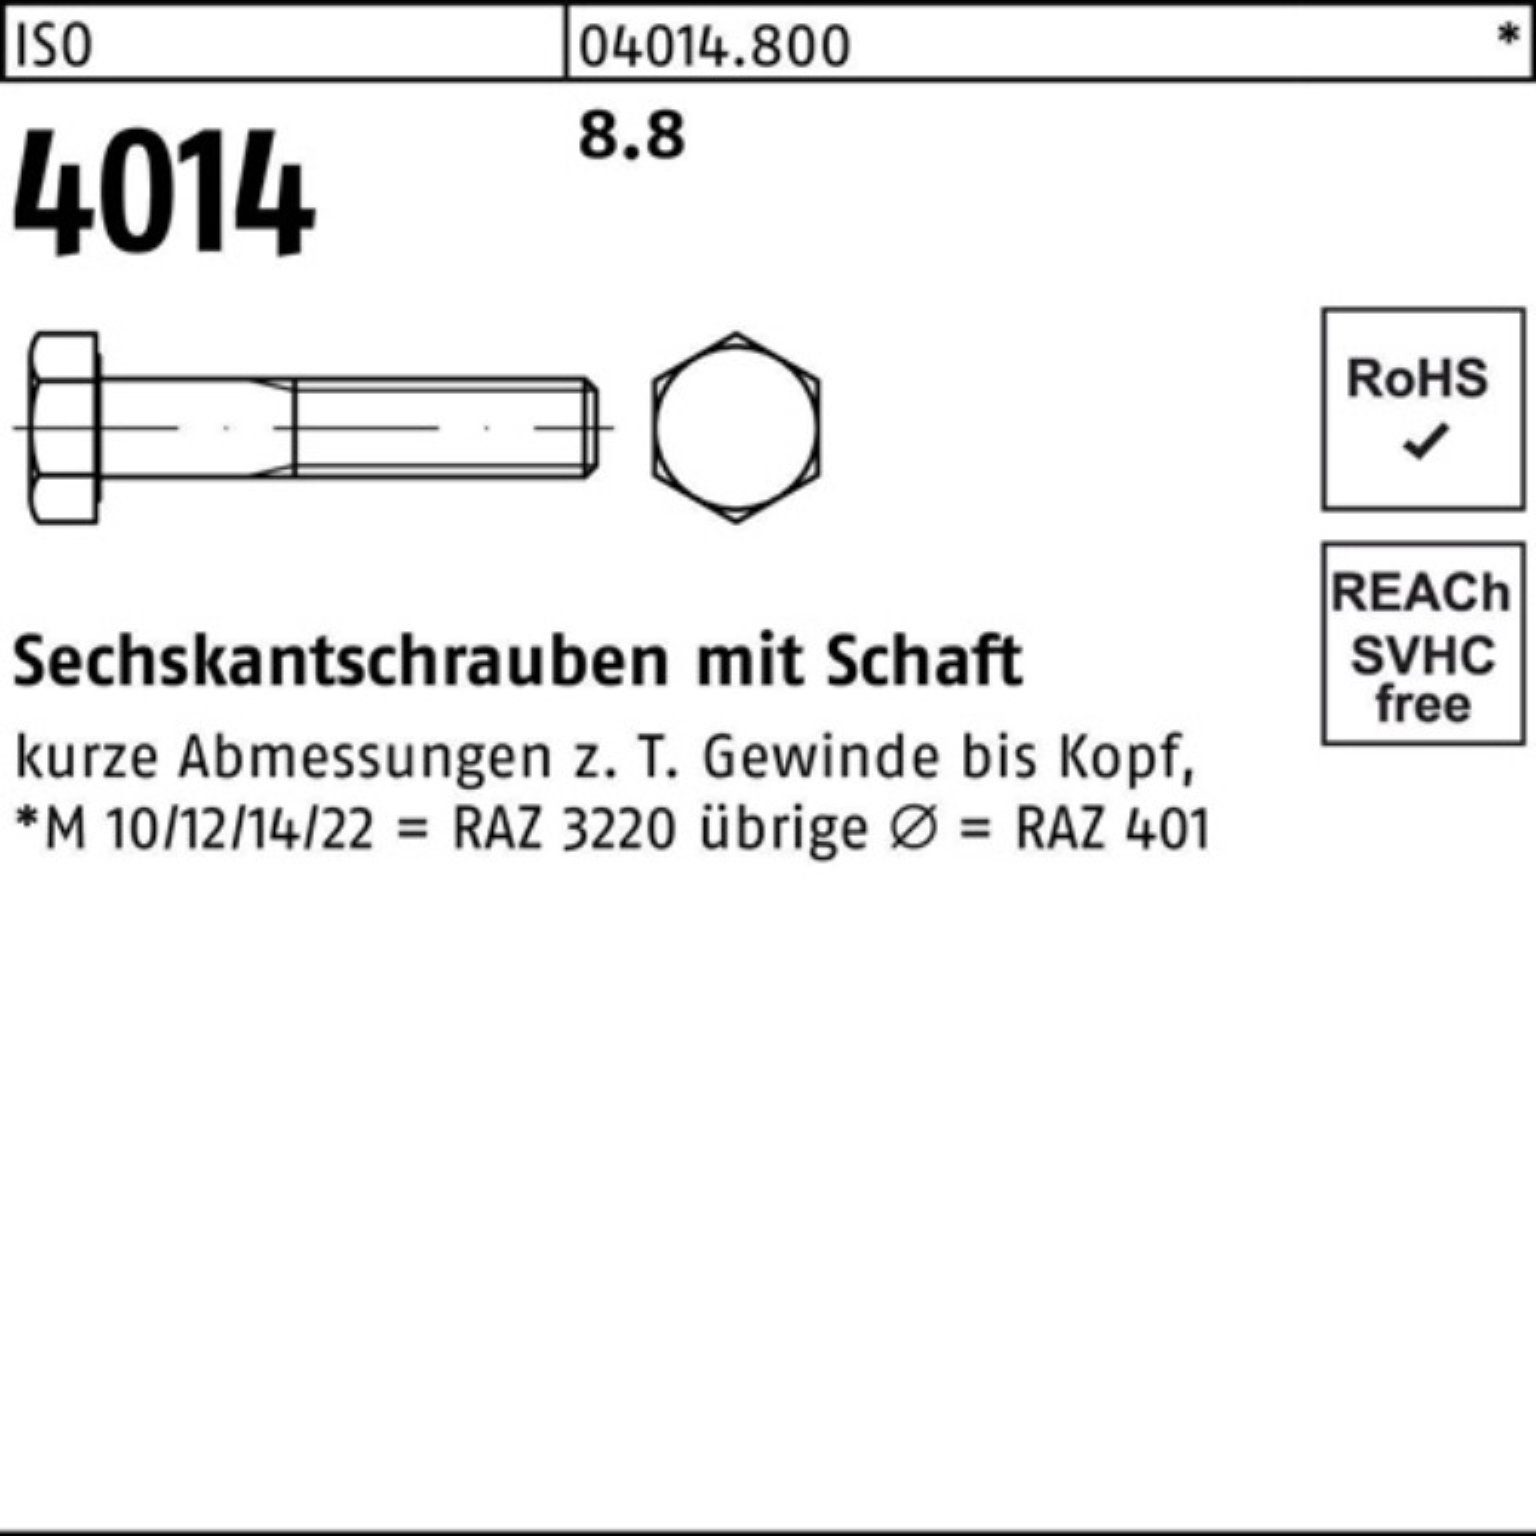 Schaft Stück 1 8.8 100er 380 ISO Bufab M30x Pack ISO 4014 Sechskantschraube Sechskantschraube